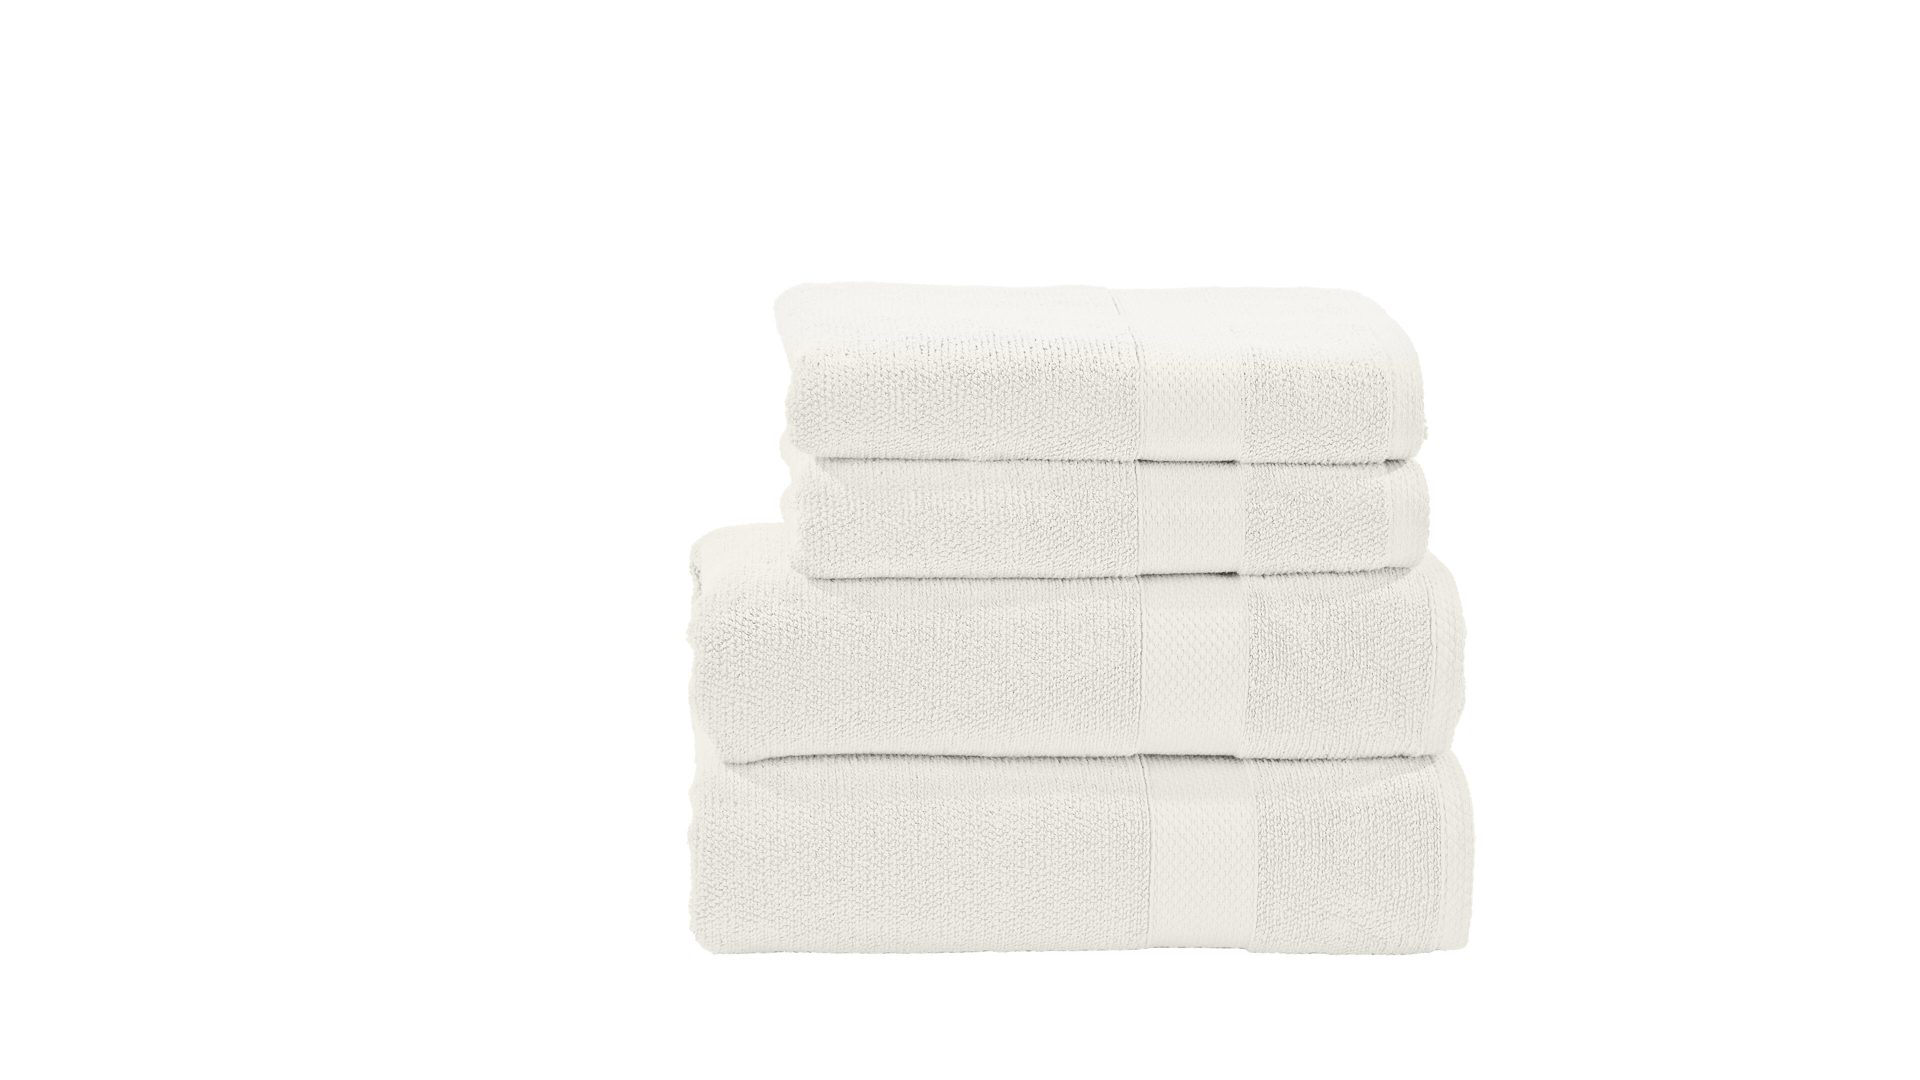 Handtuch-Set Done® be different aus Stoff in Weiß DONE®Handtuch-Set Deluxe weiße Baumwolle – vierteilig